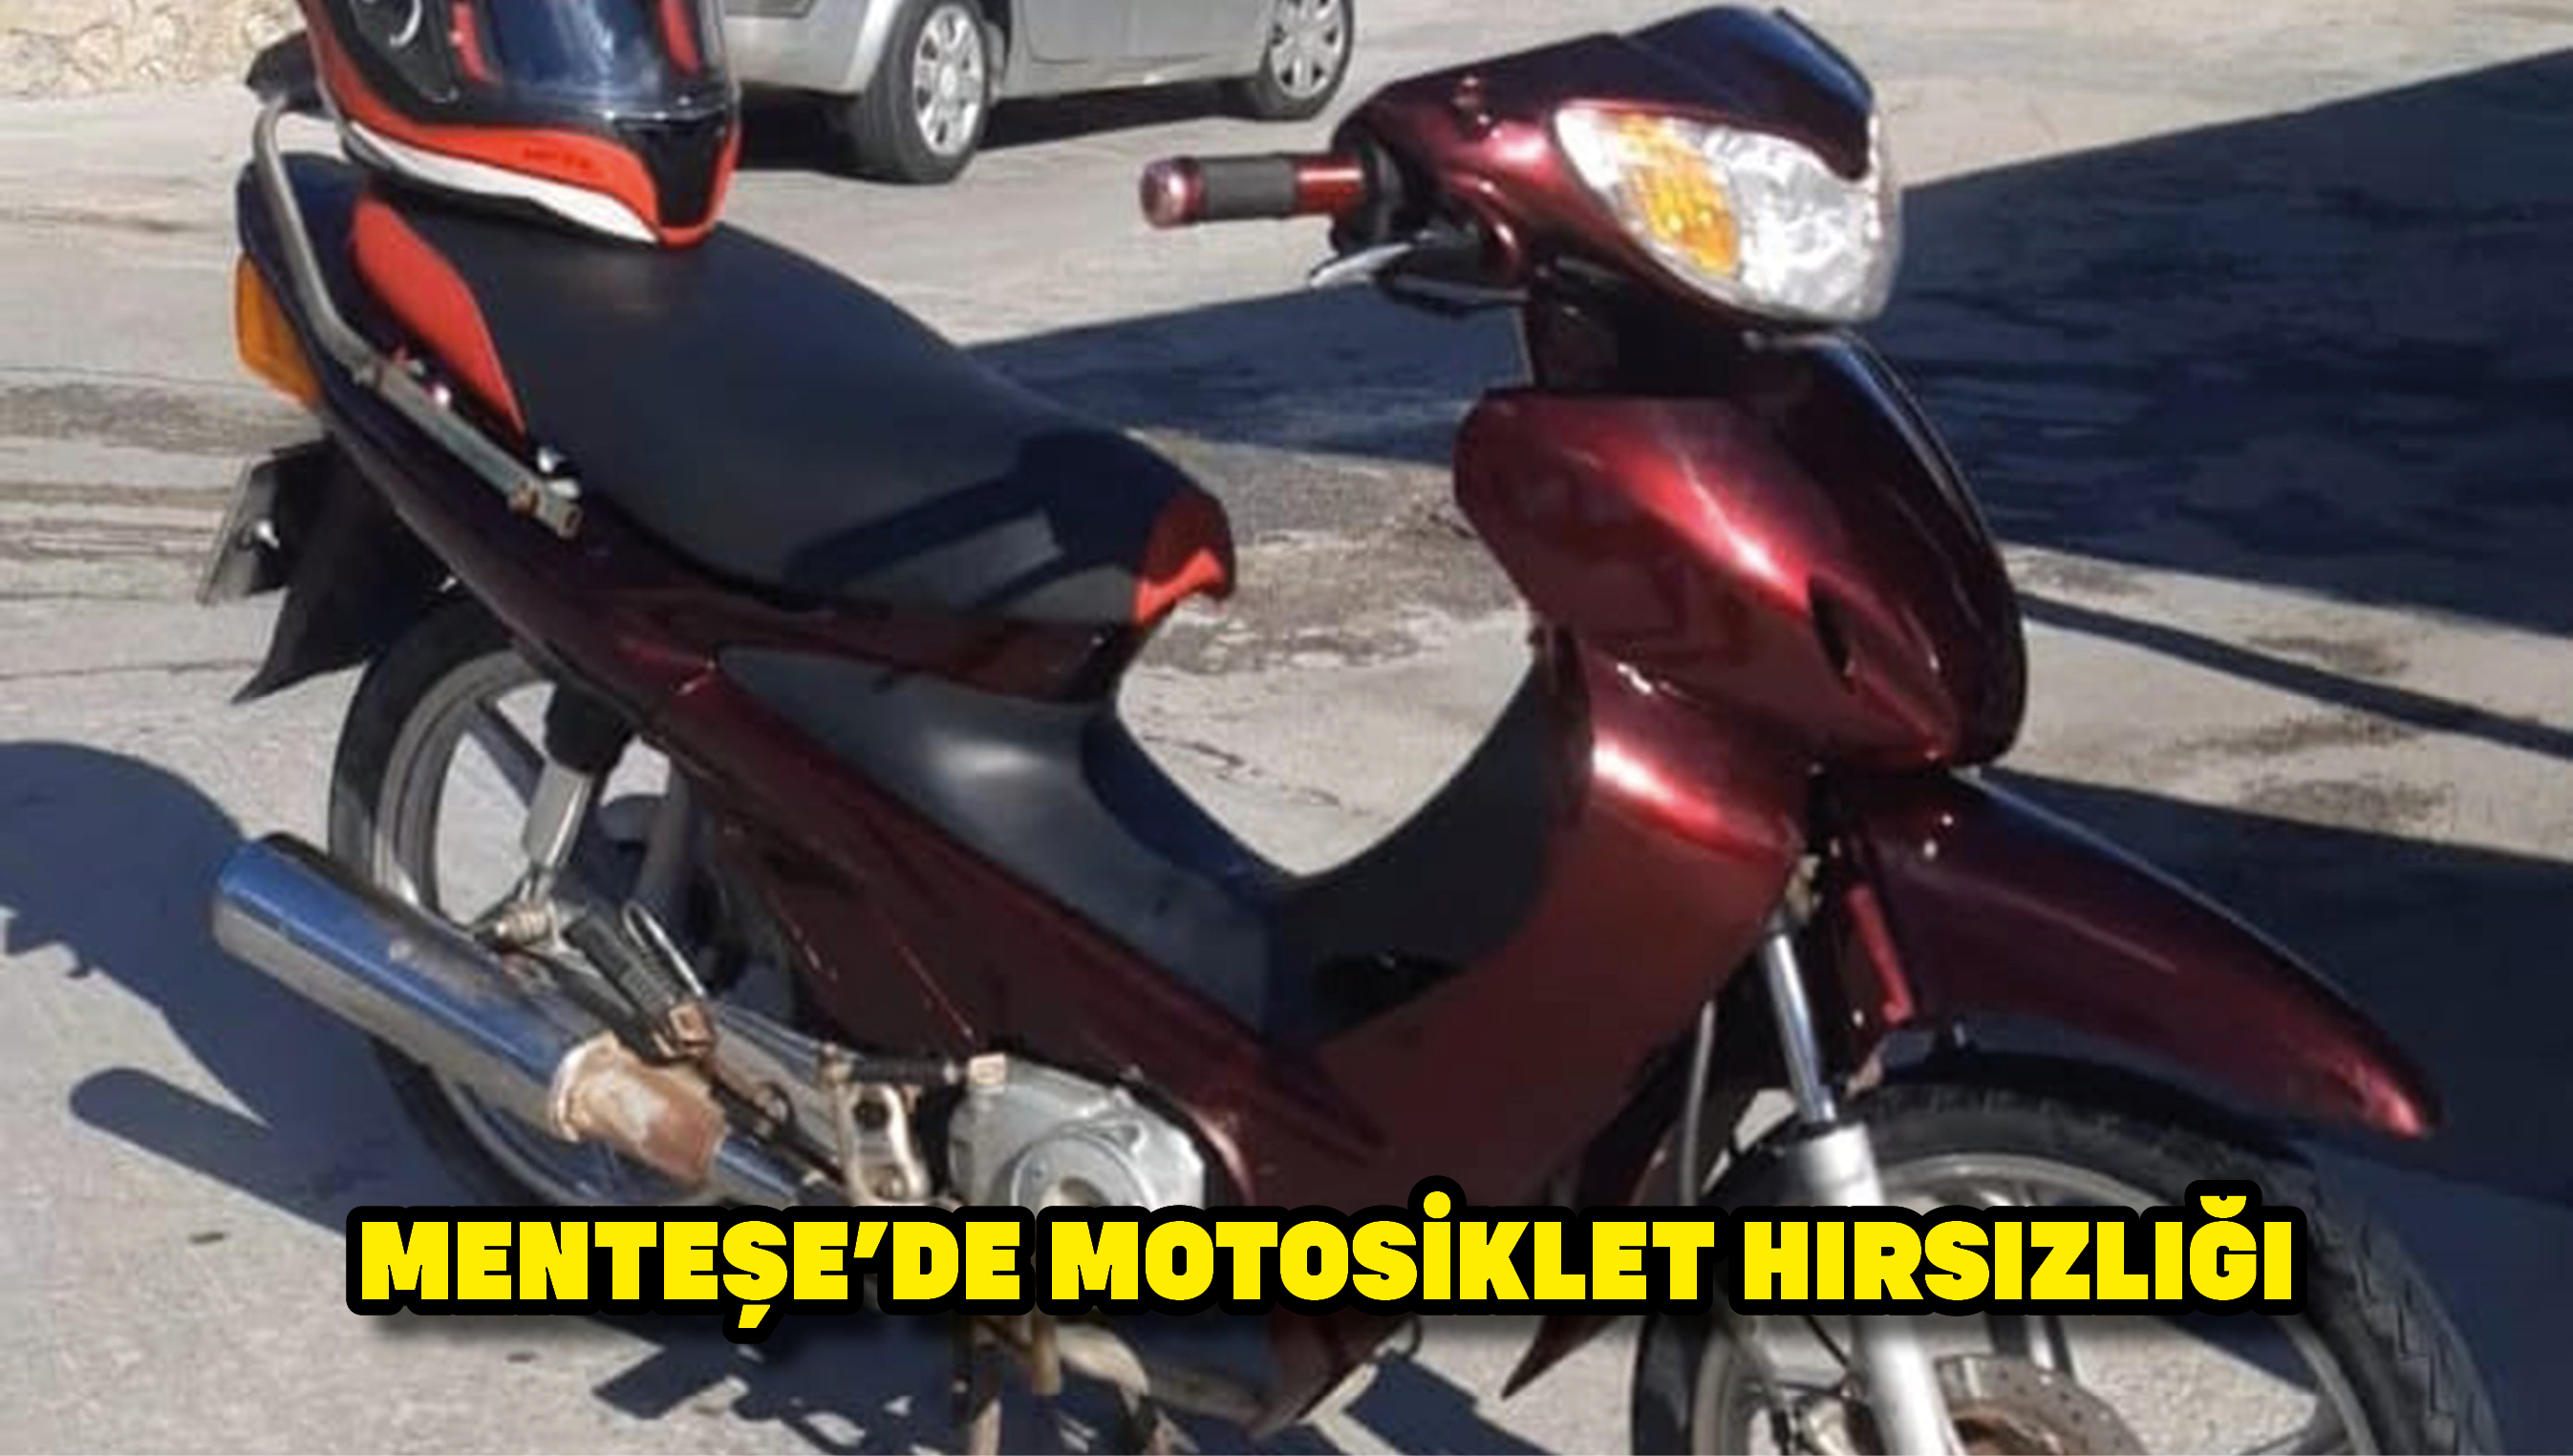 Menteşe'de motosiklet hırsızlığı